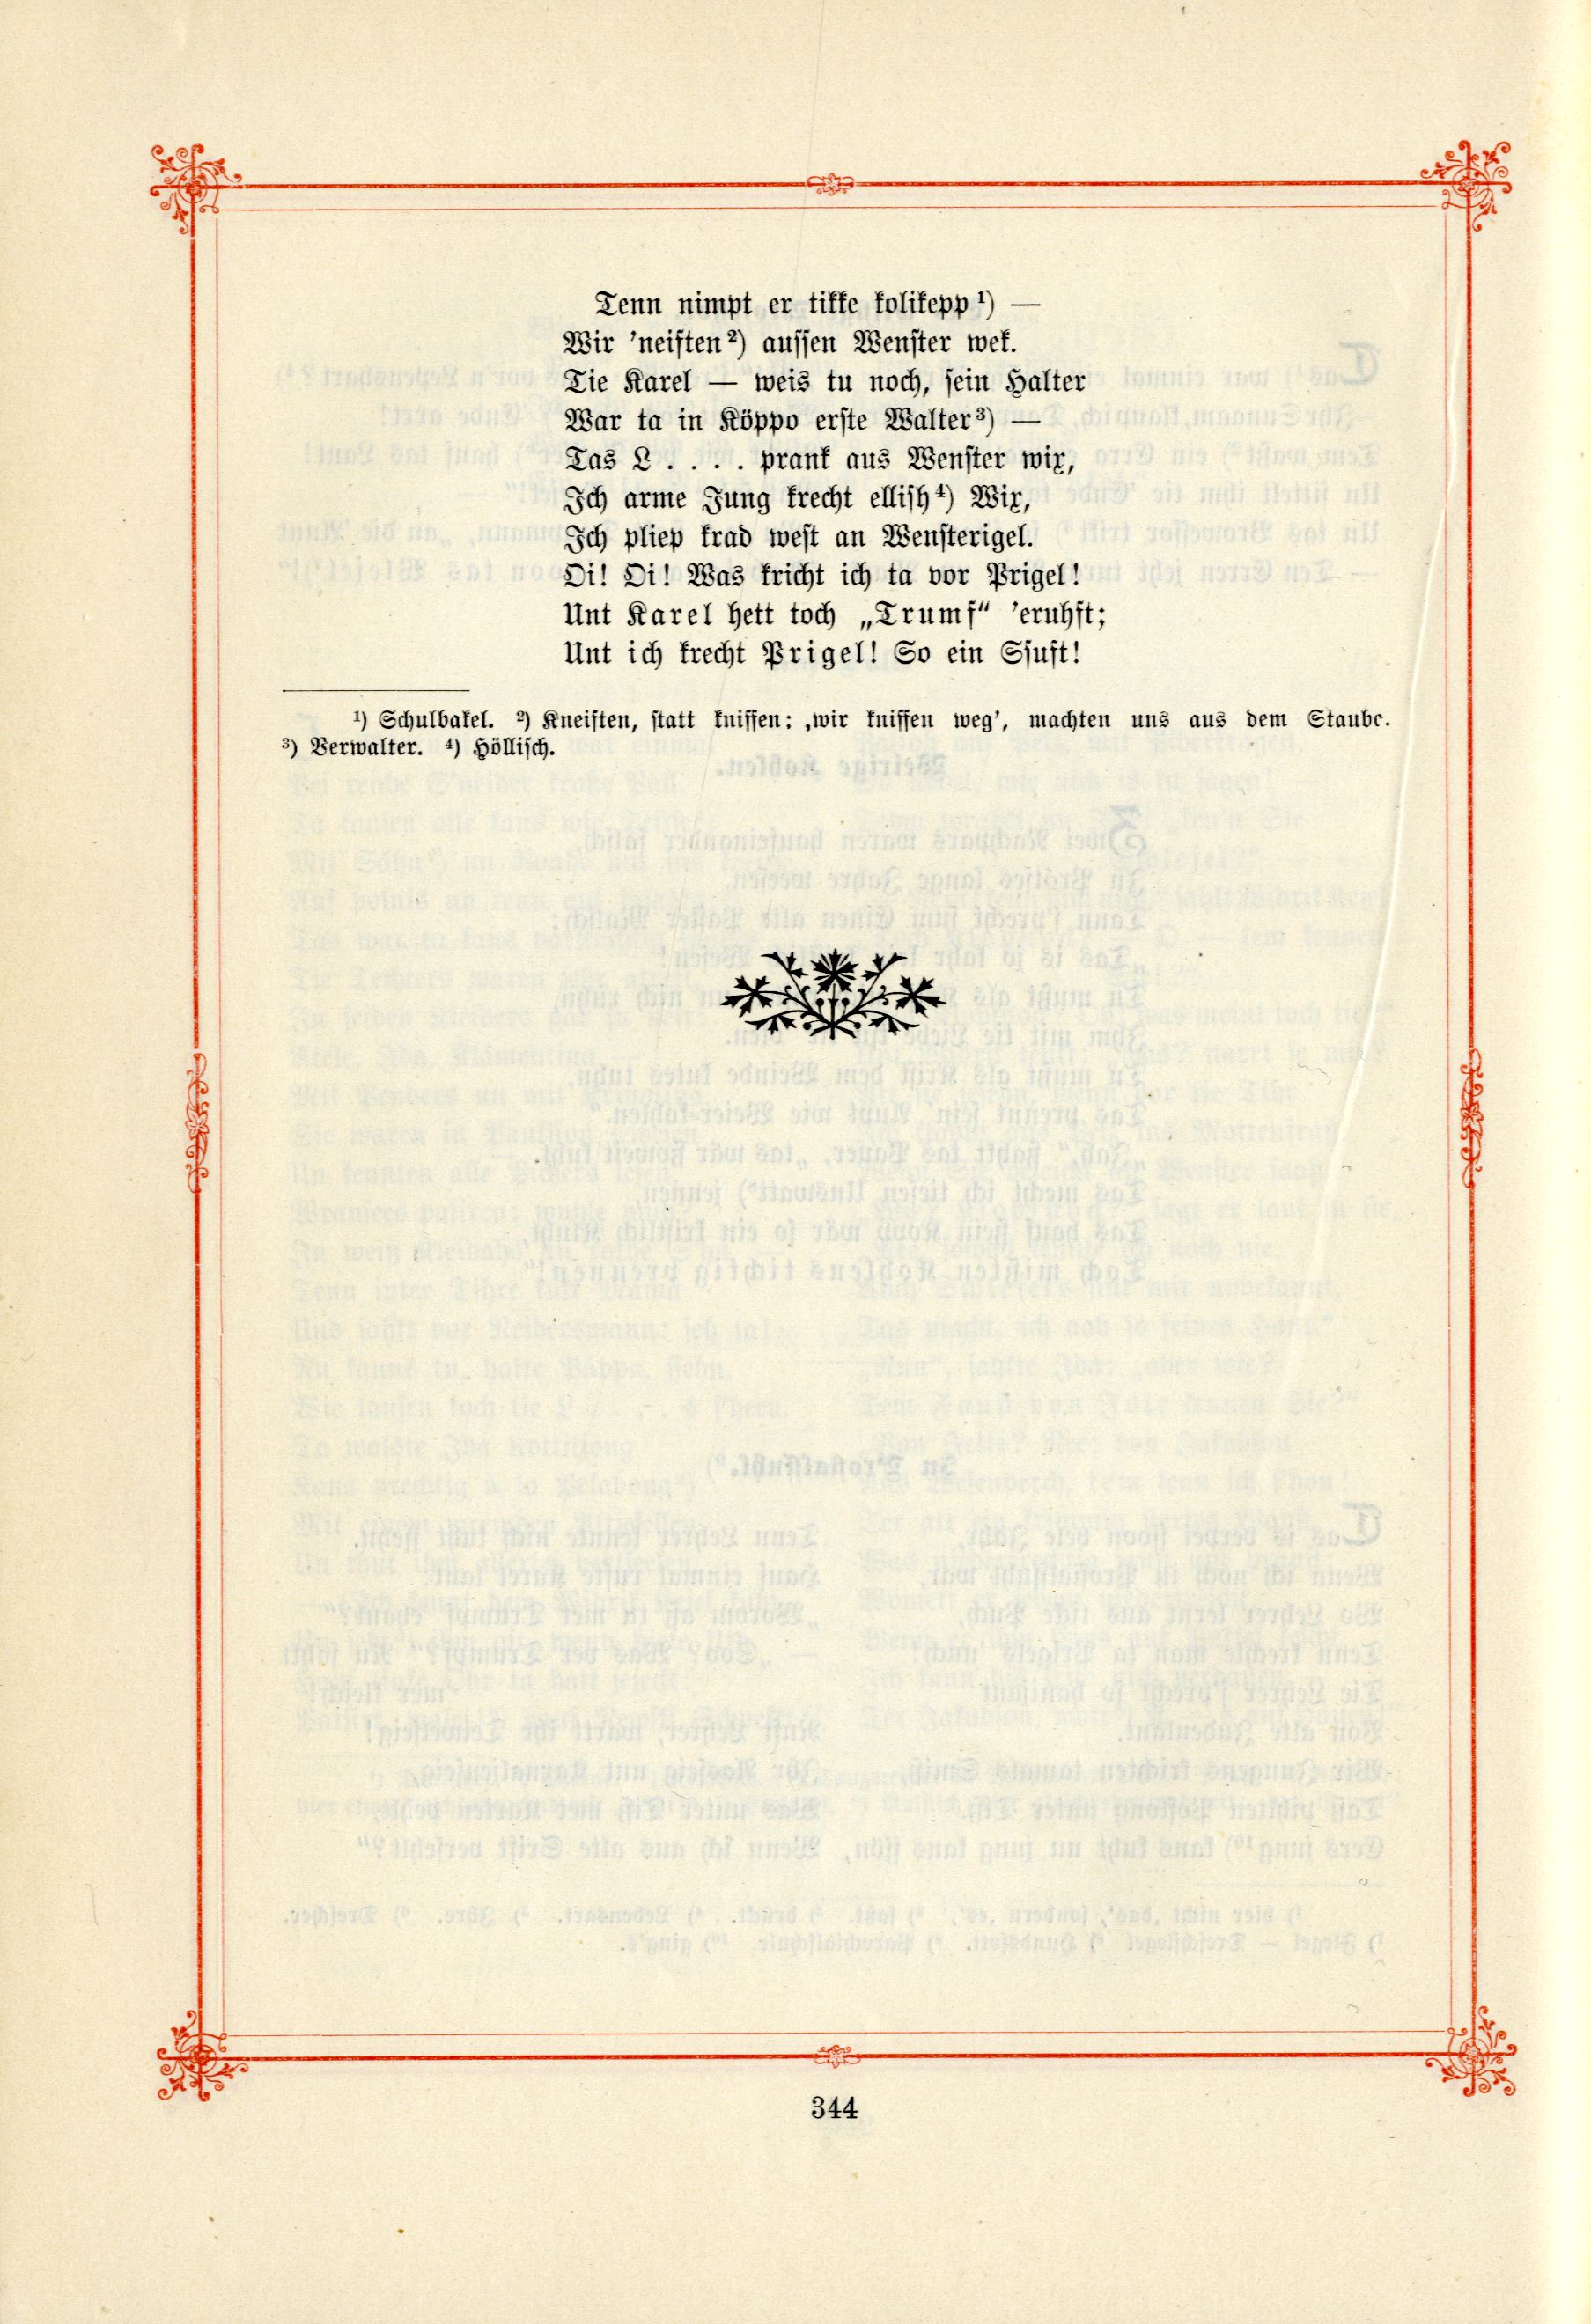 Hallerlei nurrige Sichten und soterkleichen (1895) | 7. (344) Main body of text